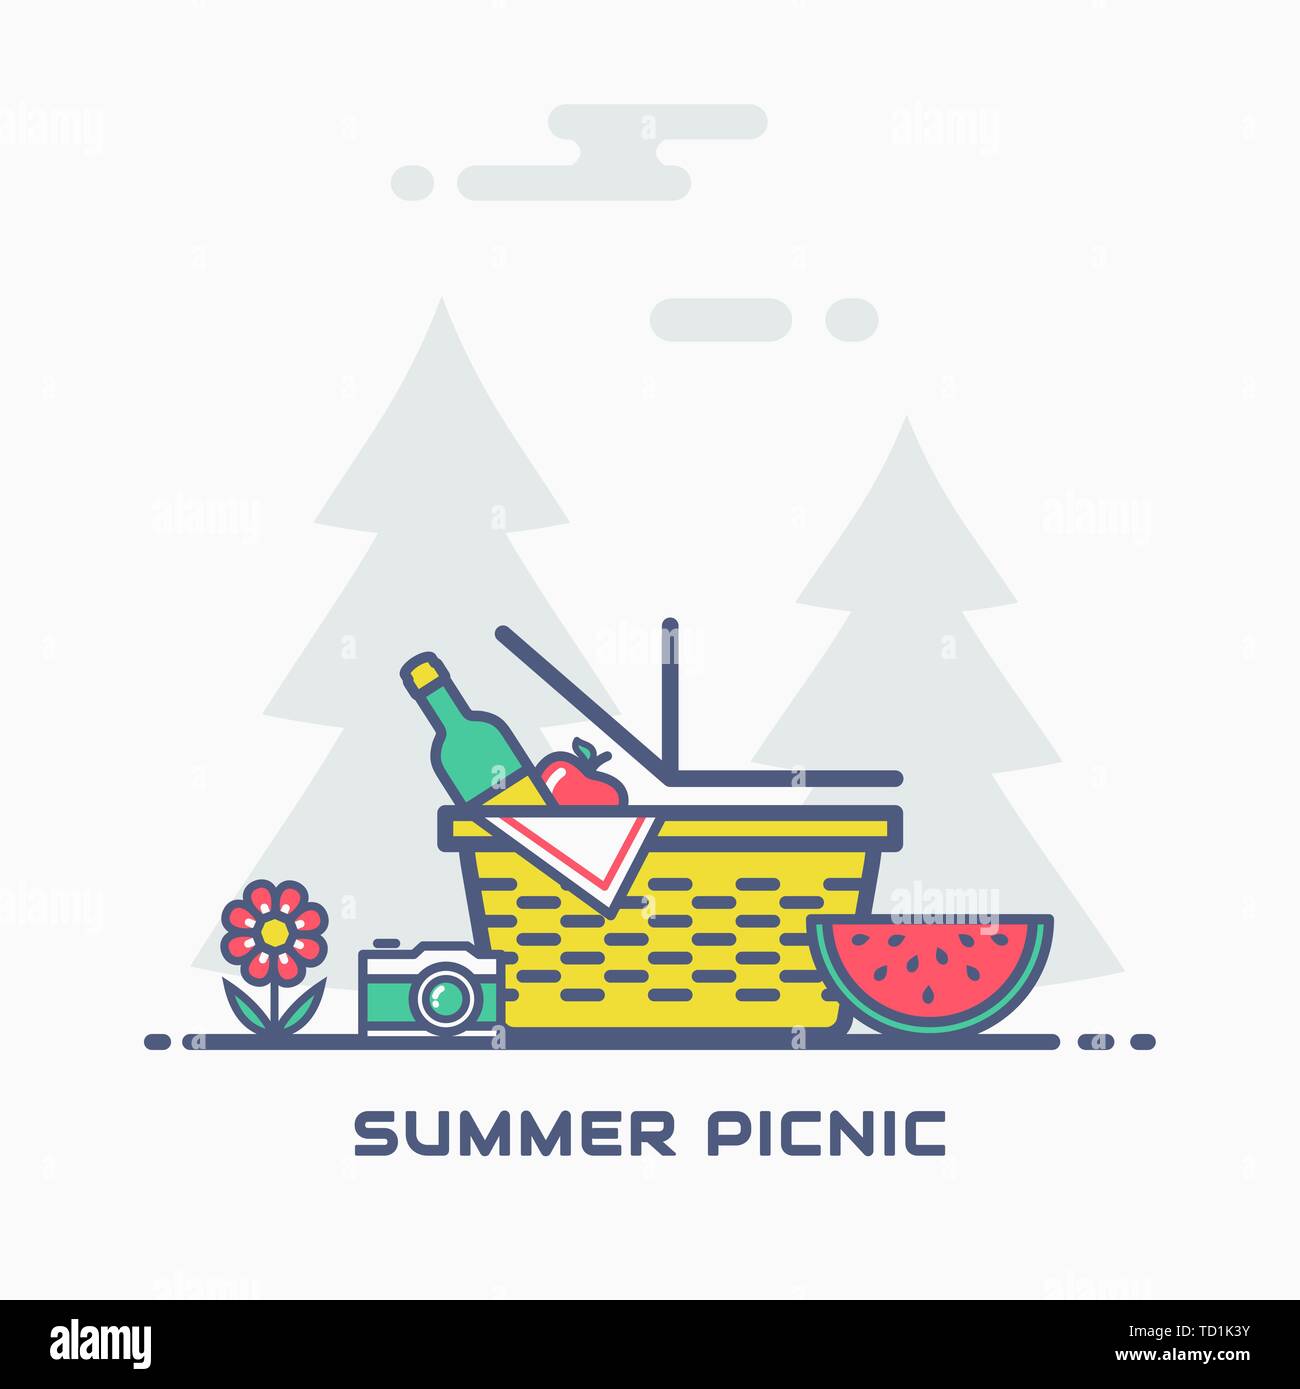 Sommer Picknick in der Natur. Vektor Banner mit Korb, Wein, Apfel, Wassermelone, Kamera und mit Bäumen im Hintergrund. Farbenfrohe, moderne Linie Abbildung. Stock Vektor